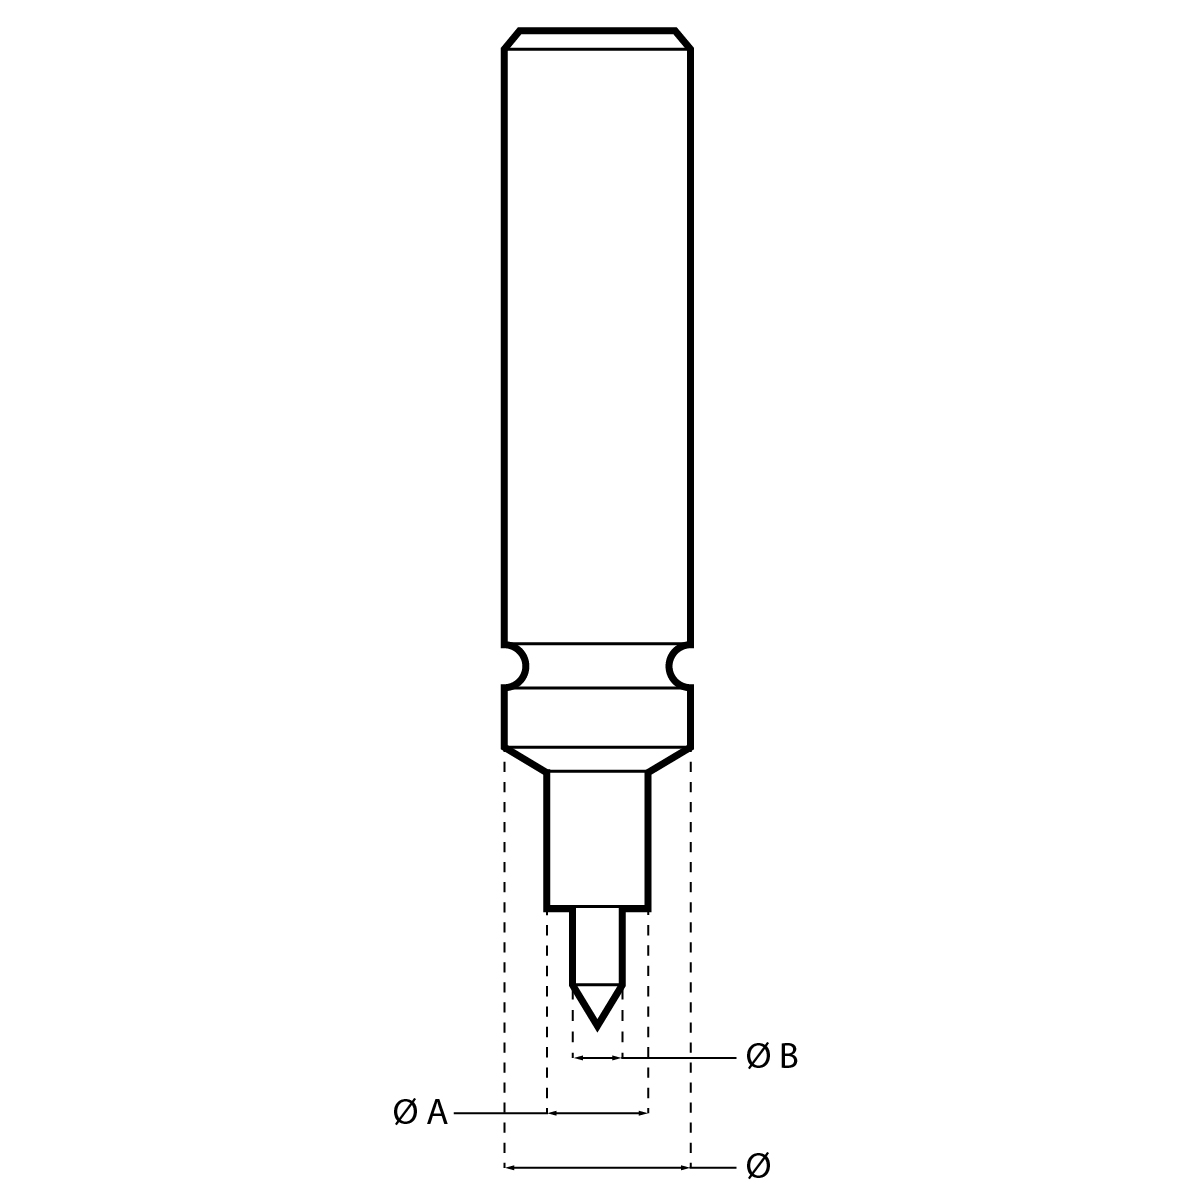 Poussoir à pompe HORIA N°60-3 Ø  appui 0.55 mm / Ø  pompe 0.40 mm